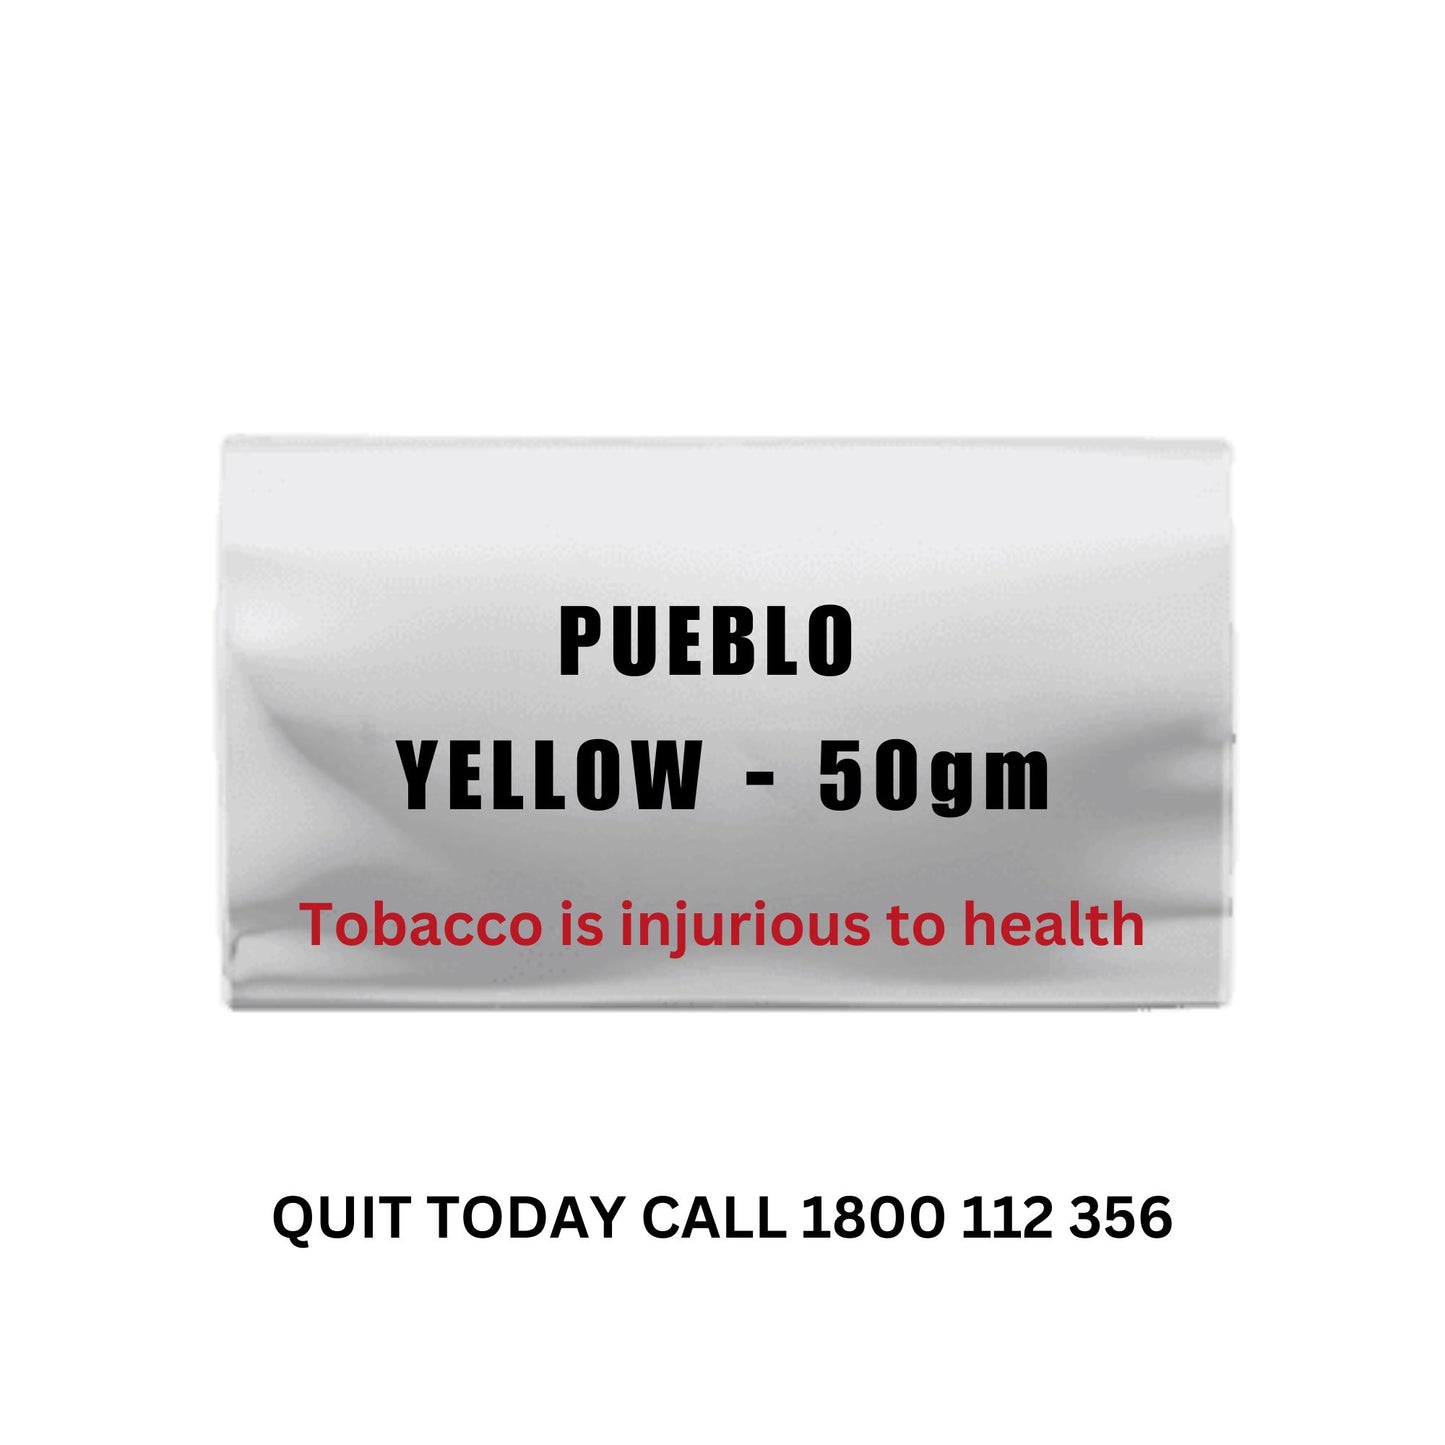 PUEBLO Yellow - 50gms